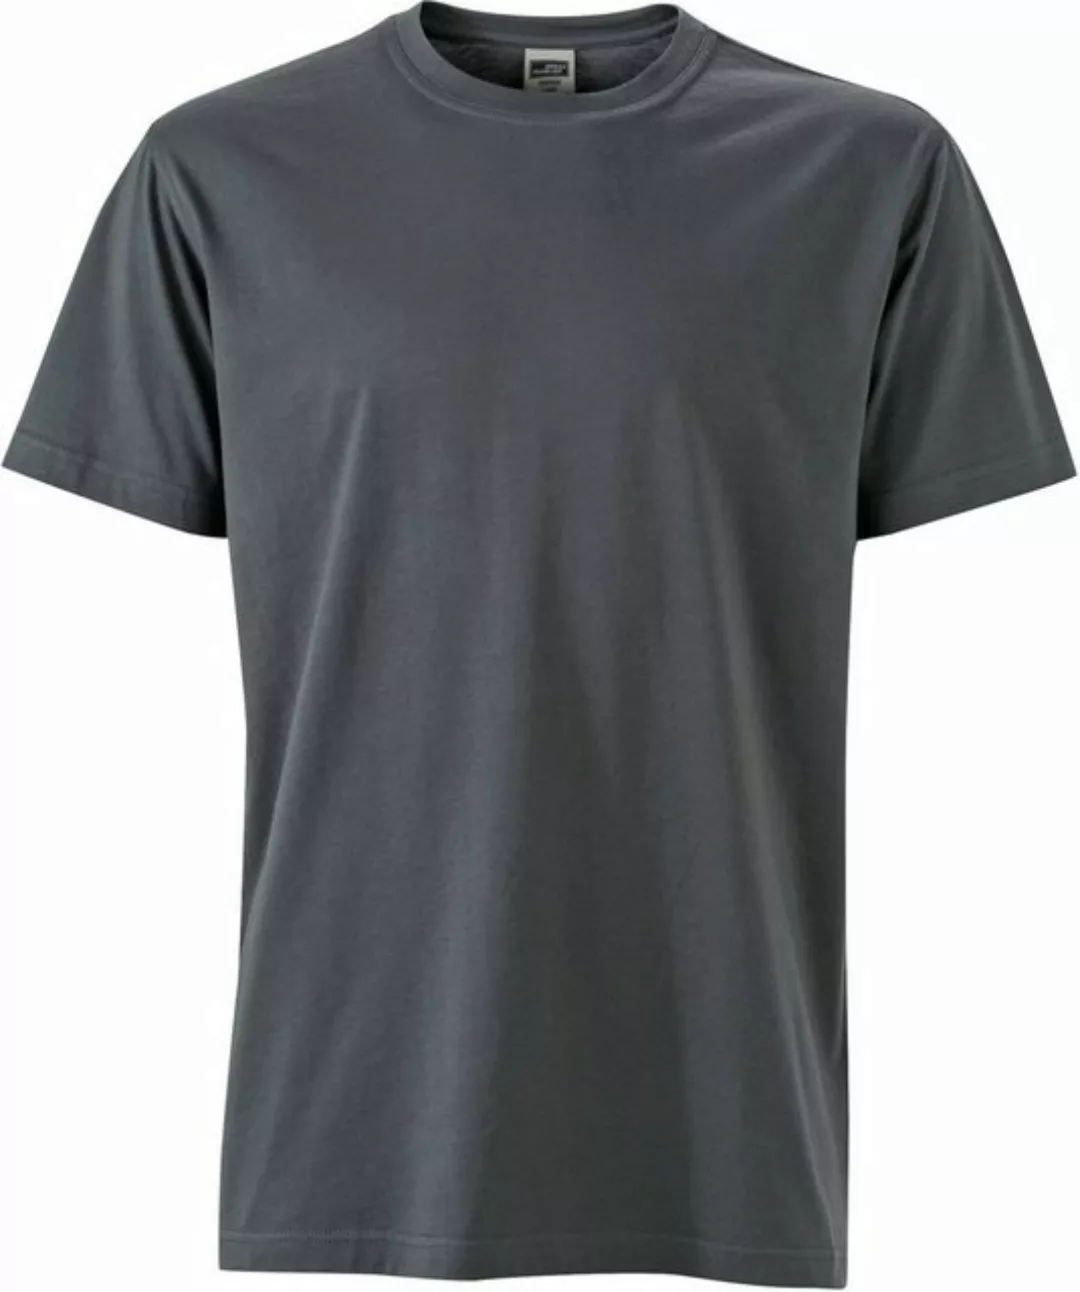 James & Nicholson T-Shirt Workwear T-Shirt FaS50838 auch in großen Größen günstig online kaufen